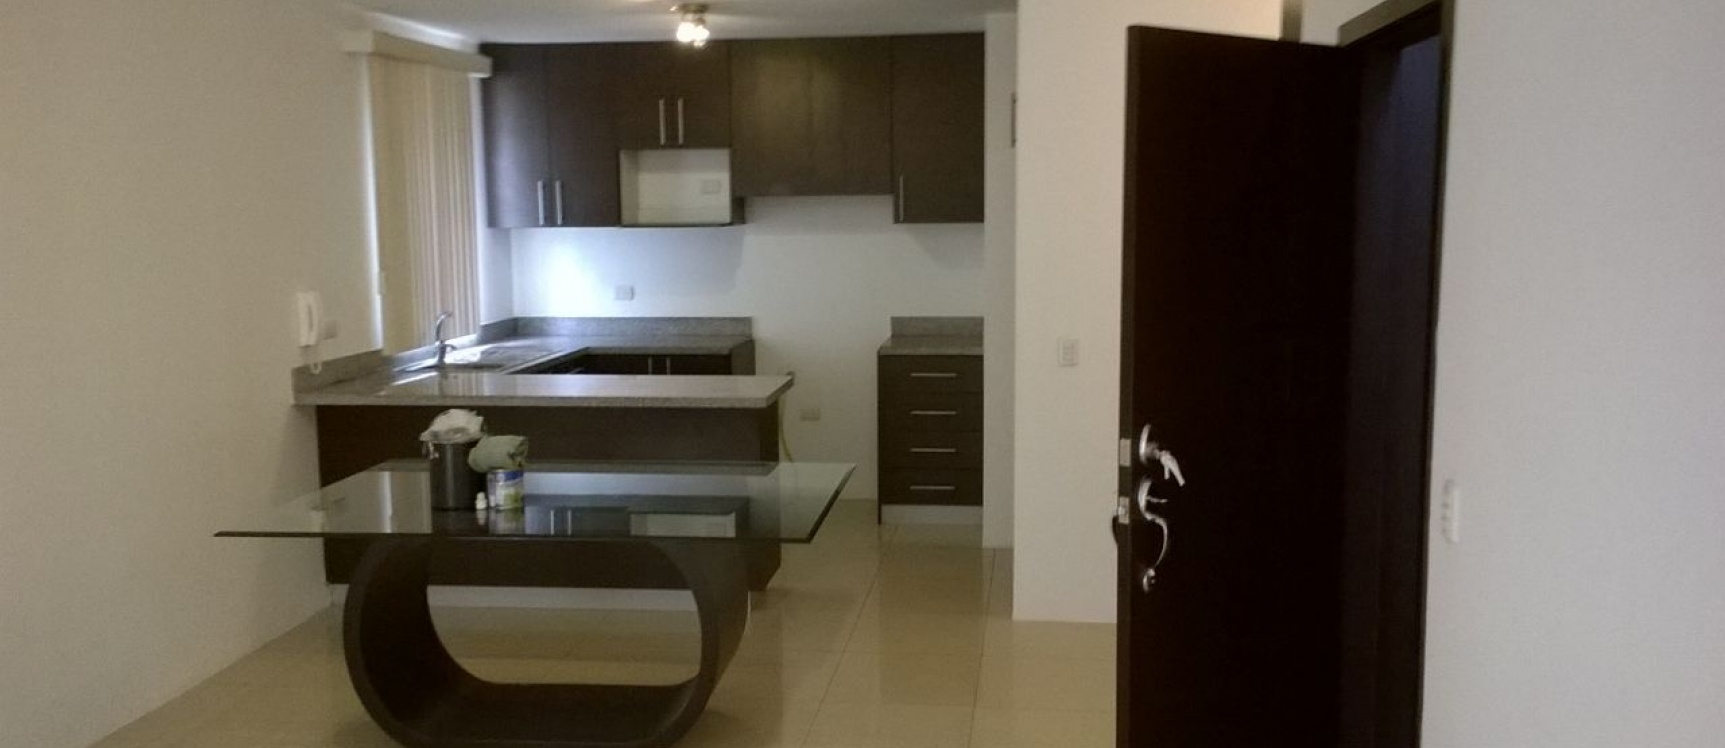 GeoBienes - Departamento 2 dormitorios 80 m2 - Ciudadela Puerto Azul Via La Costa - Plusvalia Guayaquil Casas de venta y alquiler Inmobiliaria Ecuador